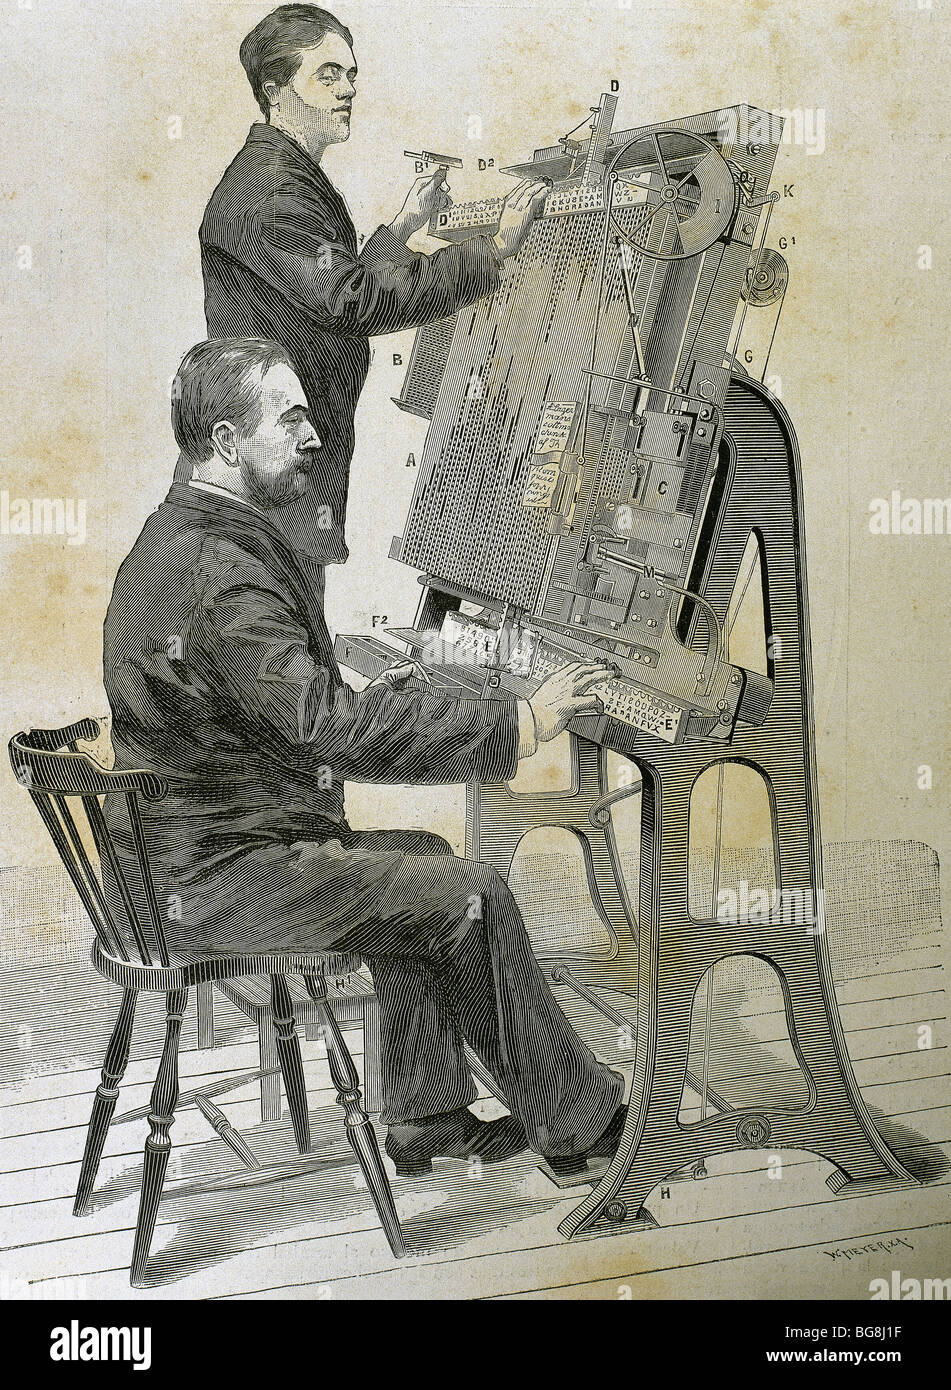 La composition typographique nouvelle machine. Gravure par O. Meyer pour 'illustration artistique', 1885. Banque D'Images